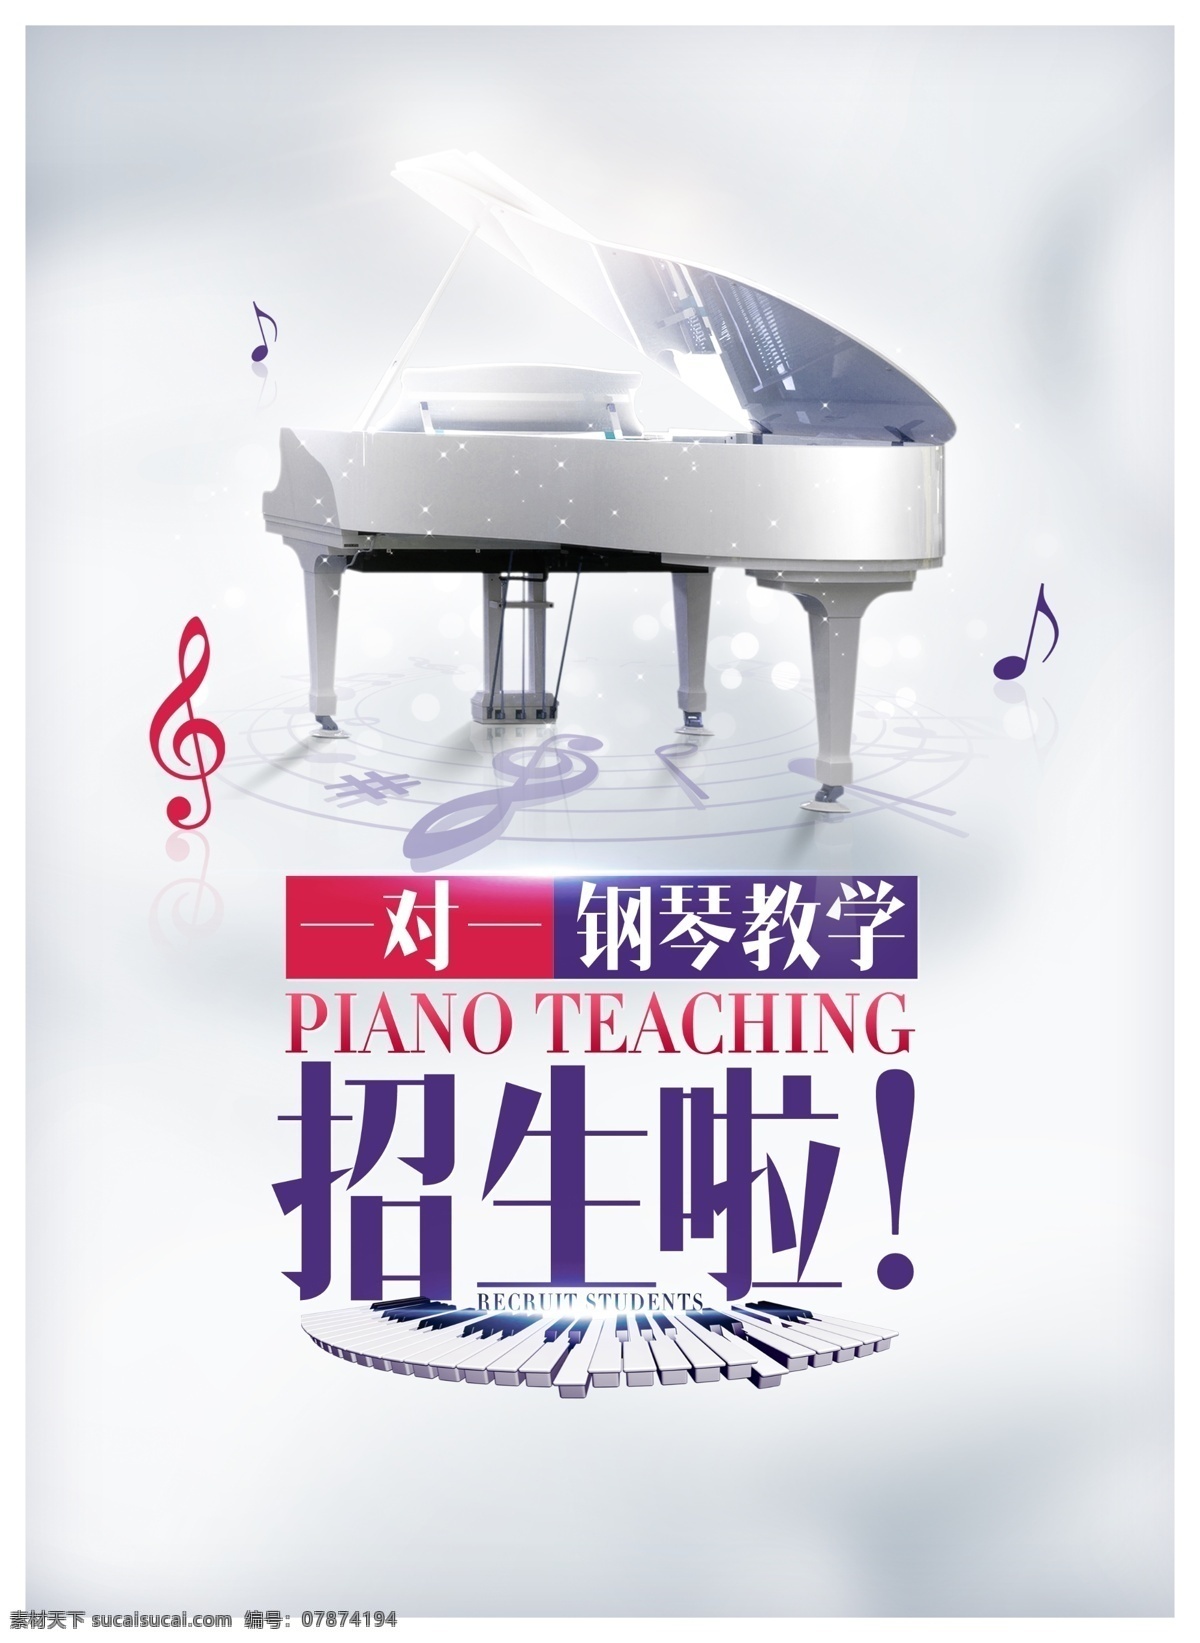 钢琴海报 钢琴招生 钢琴展板 钢琴学习 钢琴培训海报 钢琴学校 海报